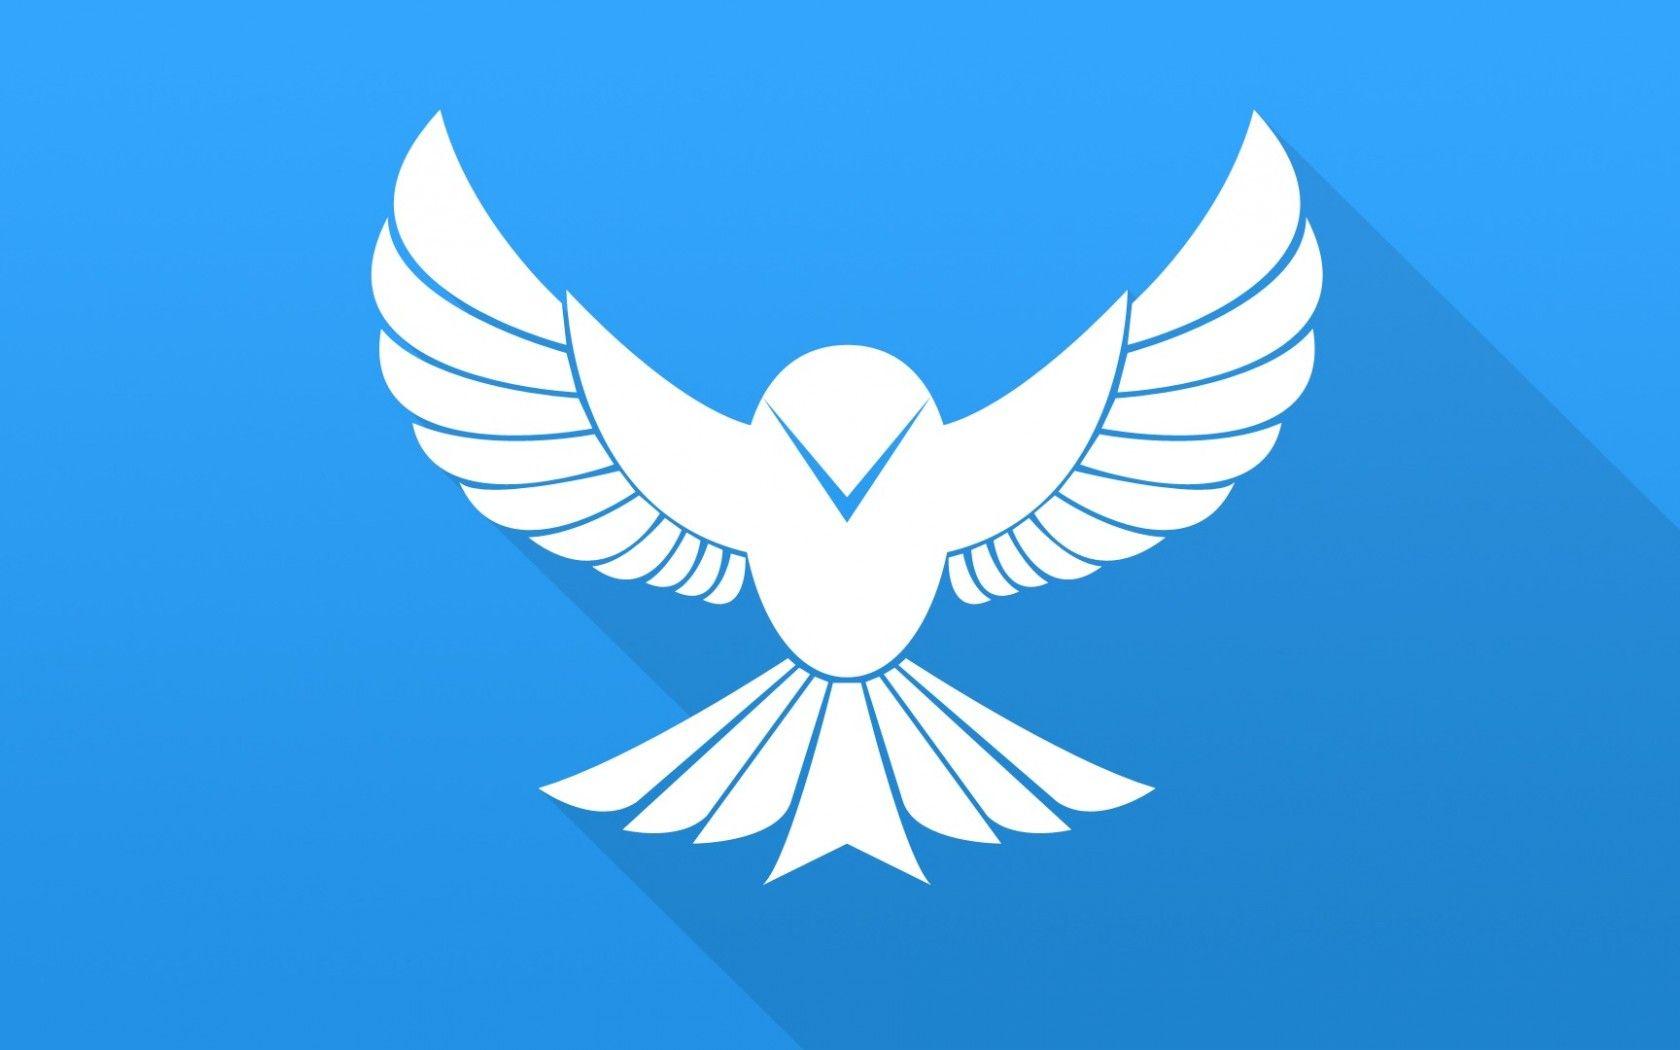 Blue Bird Emblem Logo - Download wallpaper flat, bird, blue, bird, wings, vector, minimalism ...